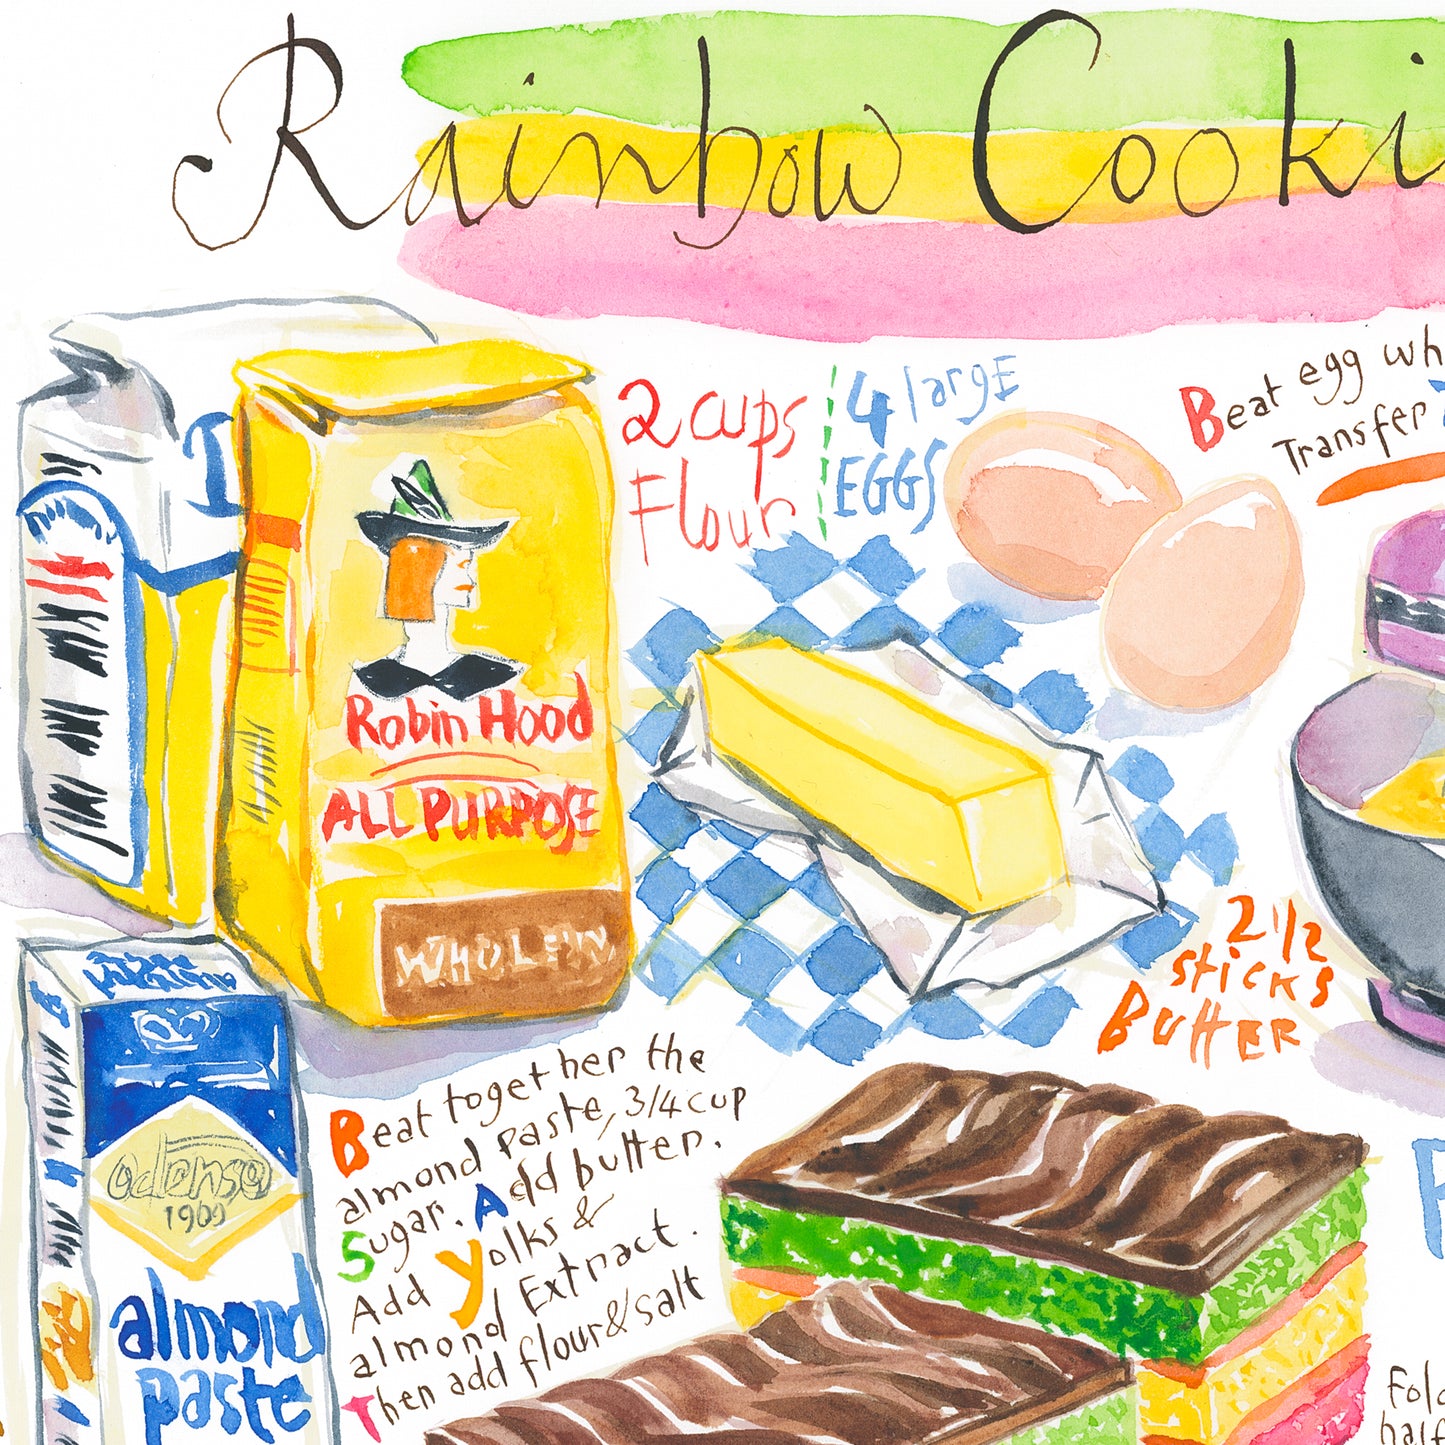 Rainbow cookie recipe